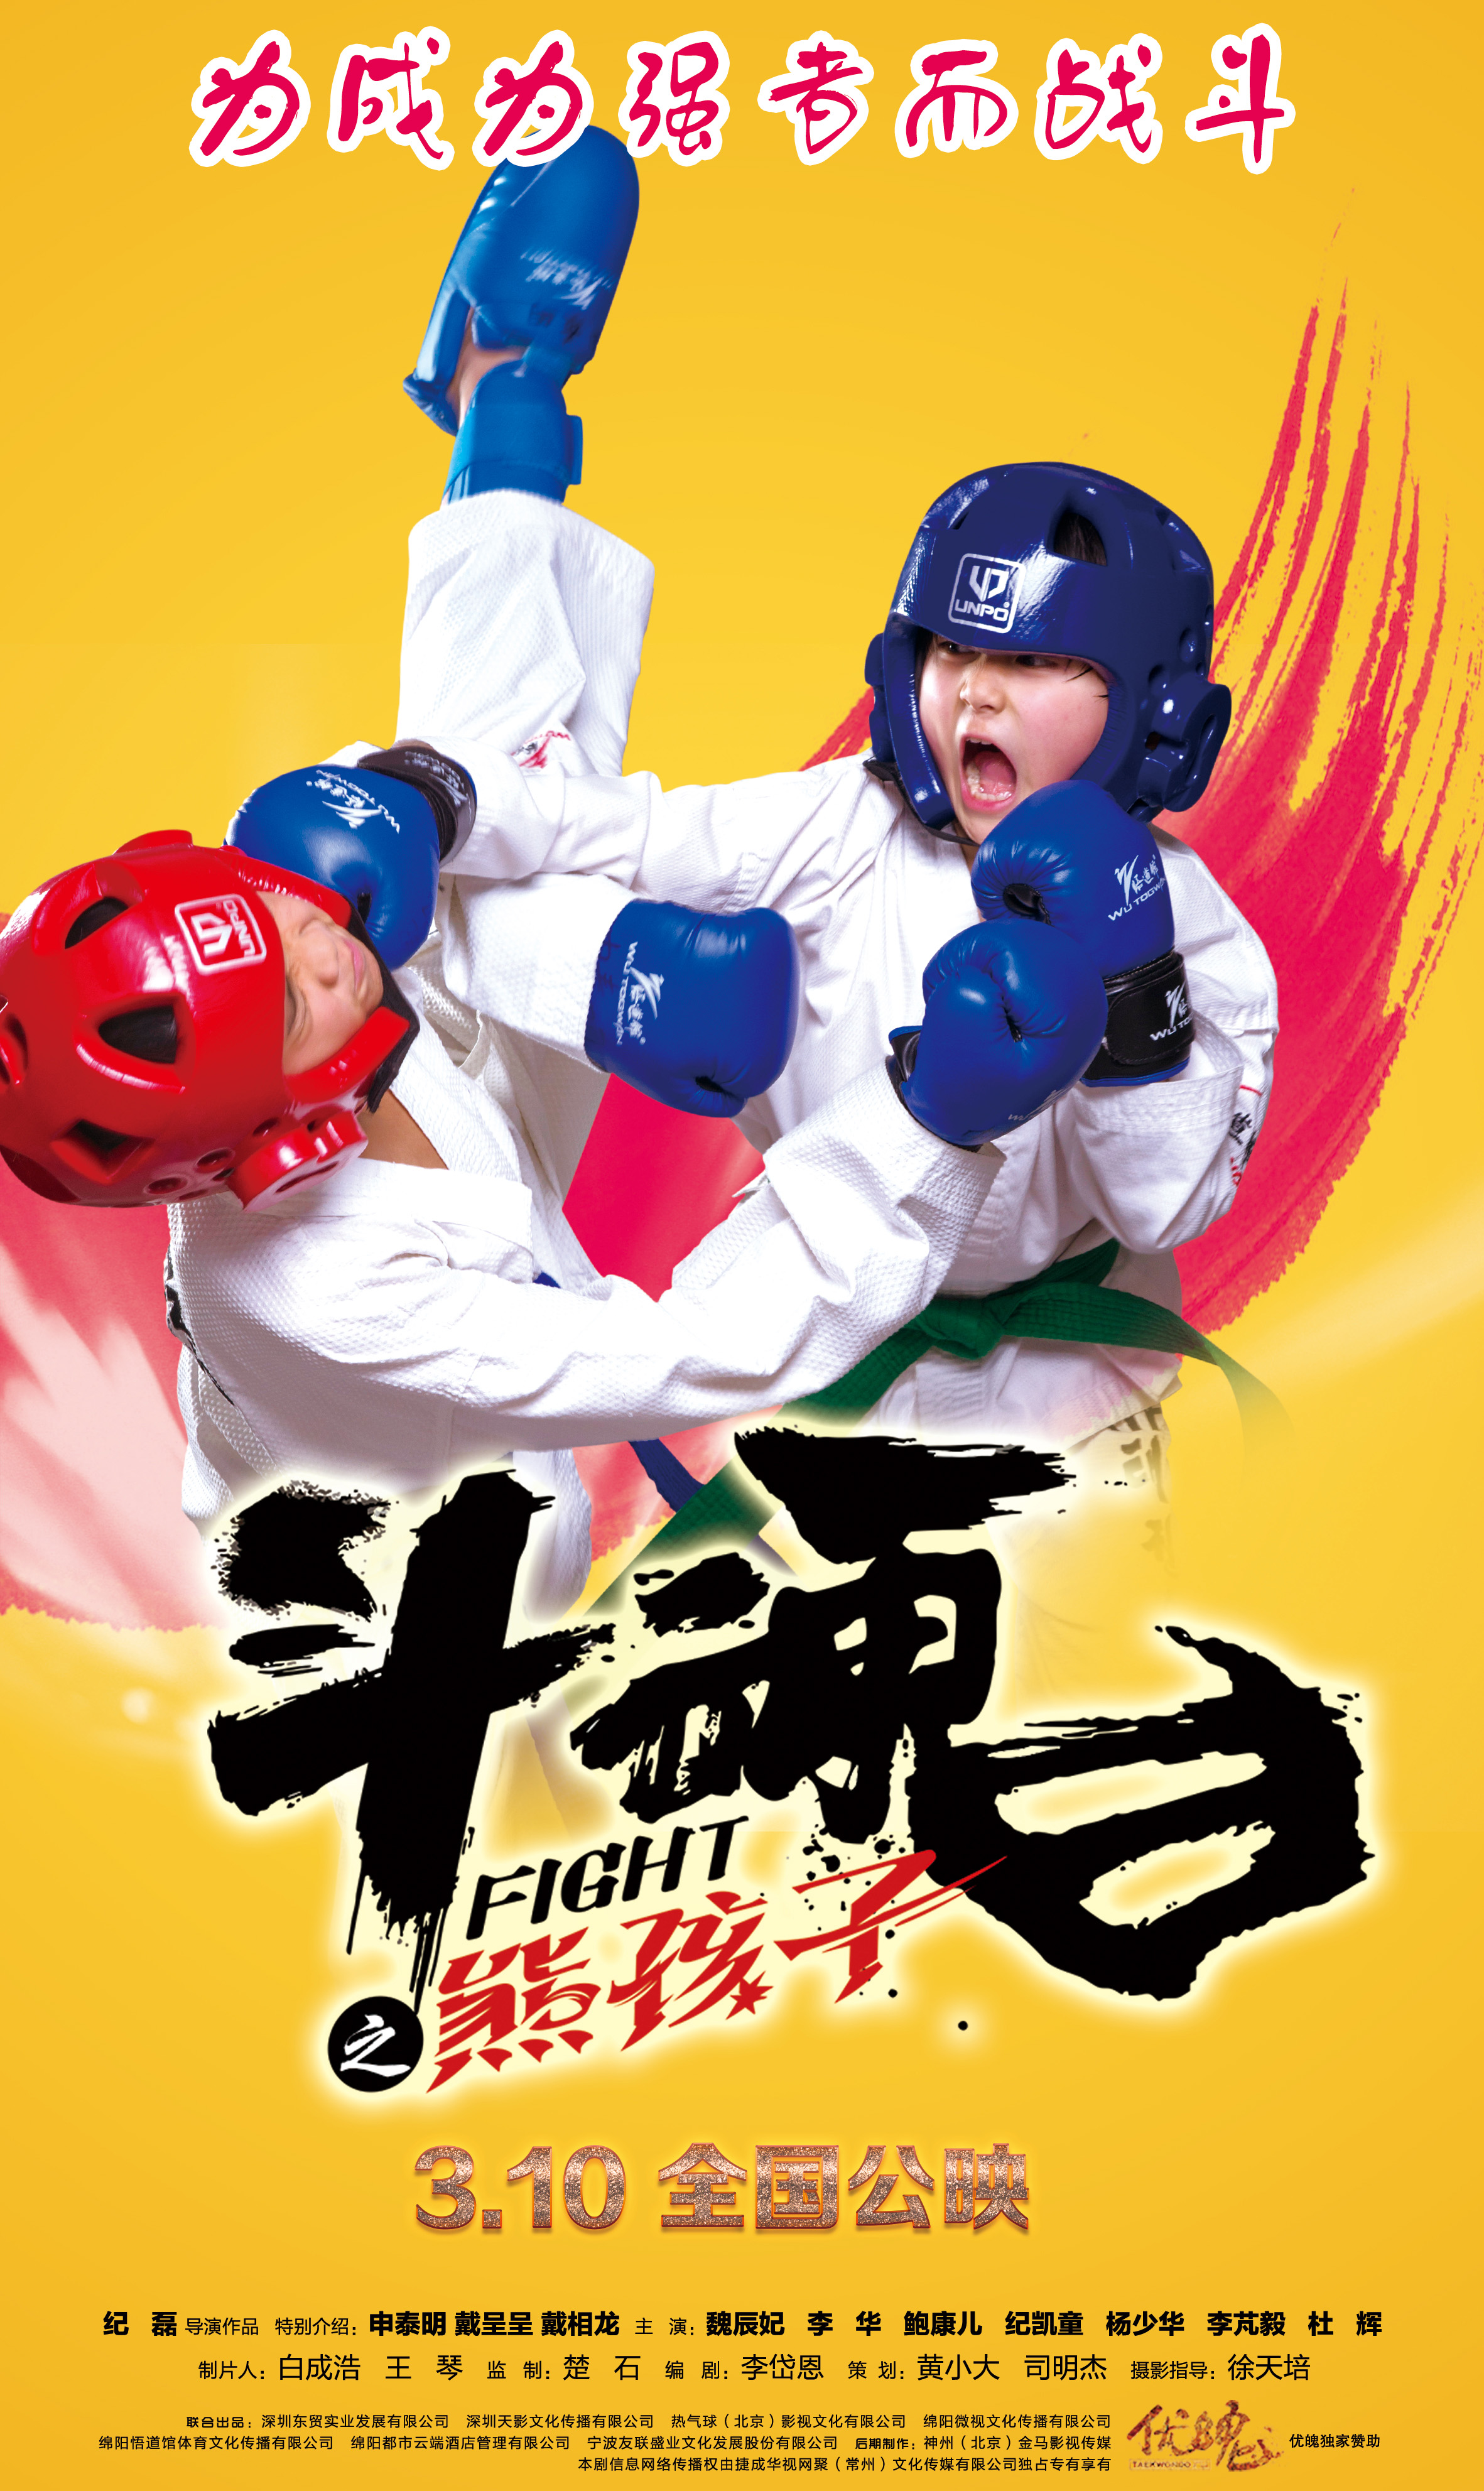 斗魂之熊孩子 - Fight